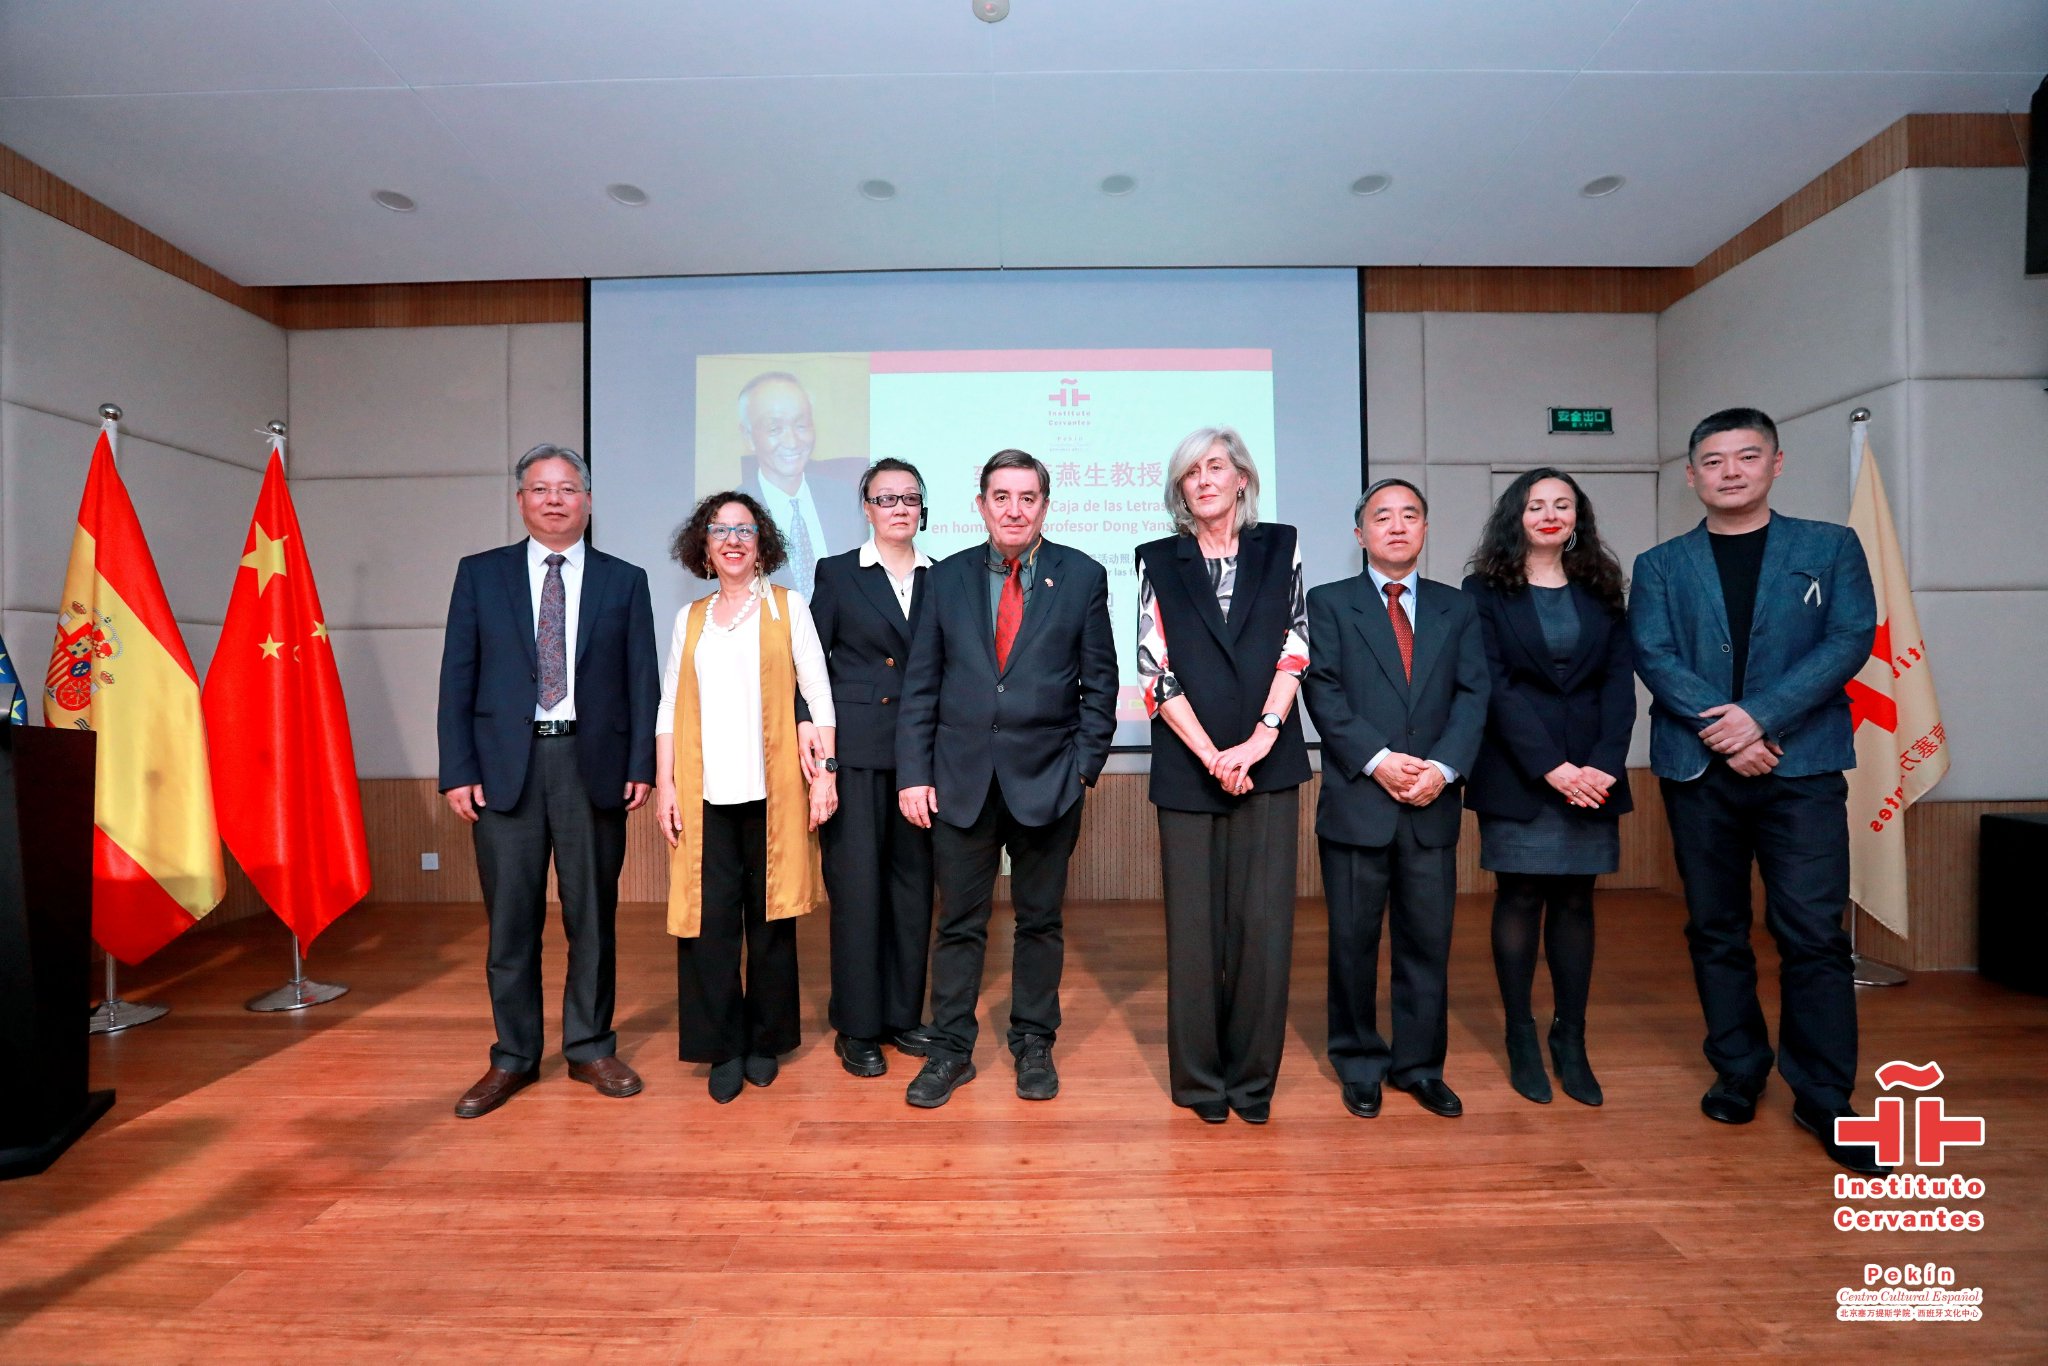 塞萬提斯學院院長加西亞（左四）、西班牙駐華大使瑪爾塔·貝坦索斯（右四）參加活動集體合照。受訪者供圖